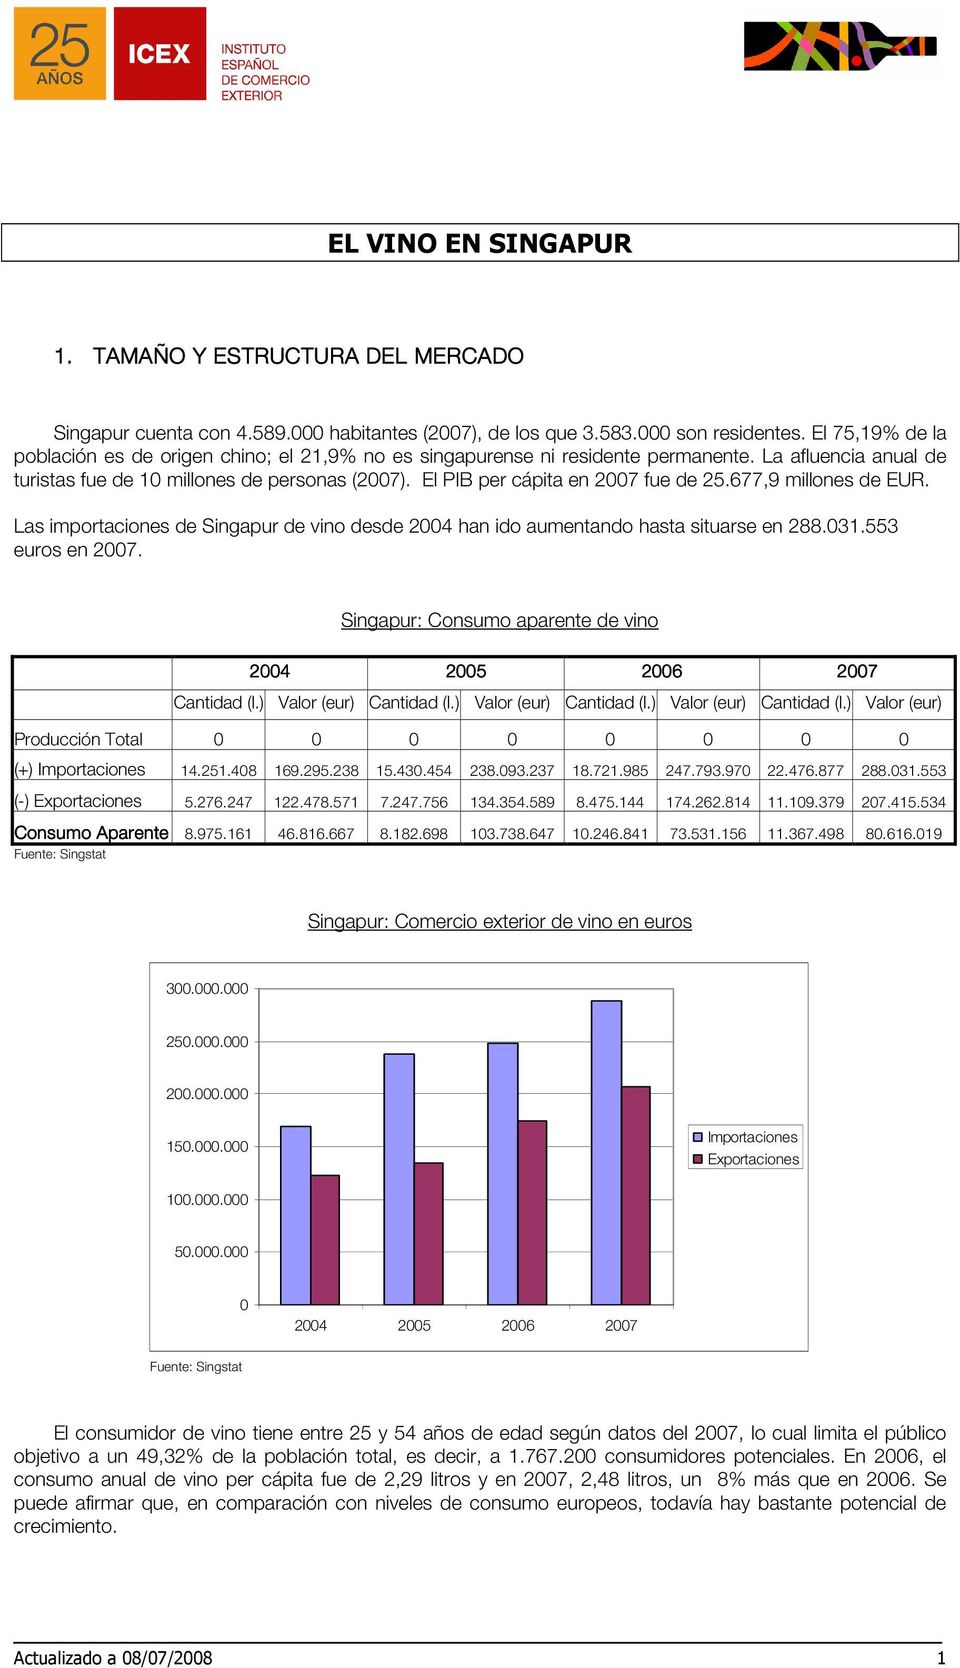 El PIB per cápita en 2007 fue de 25.677,9 millones de EUR. Las importaciones de Singapur de vino desde 2004 han ido aumentando hasta situarse en 288.031.553 euros en 2007.